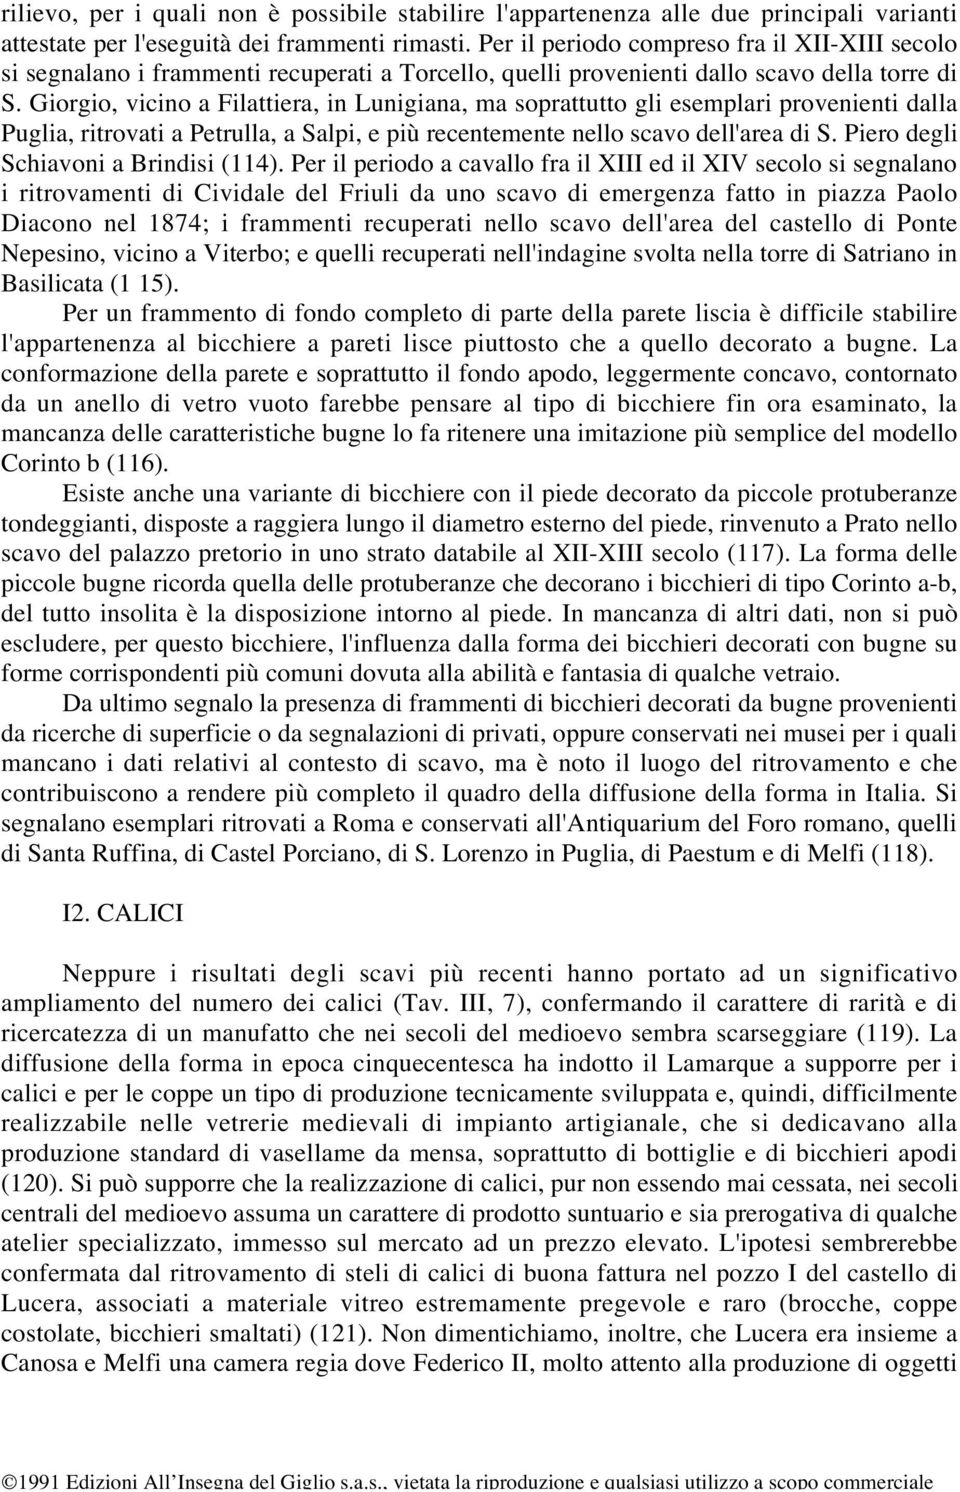 Giorgio, vicino a Filattiera, in Lunigiana, ma soprattutto gli esemplari provenienti dalla Puglia, ritrovati a Petrulla, a Salpi, e più recentemente nello scavo dell'area di S.